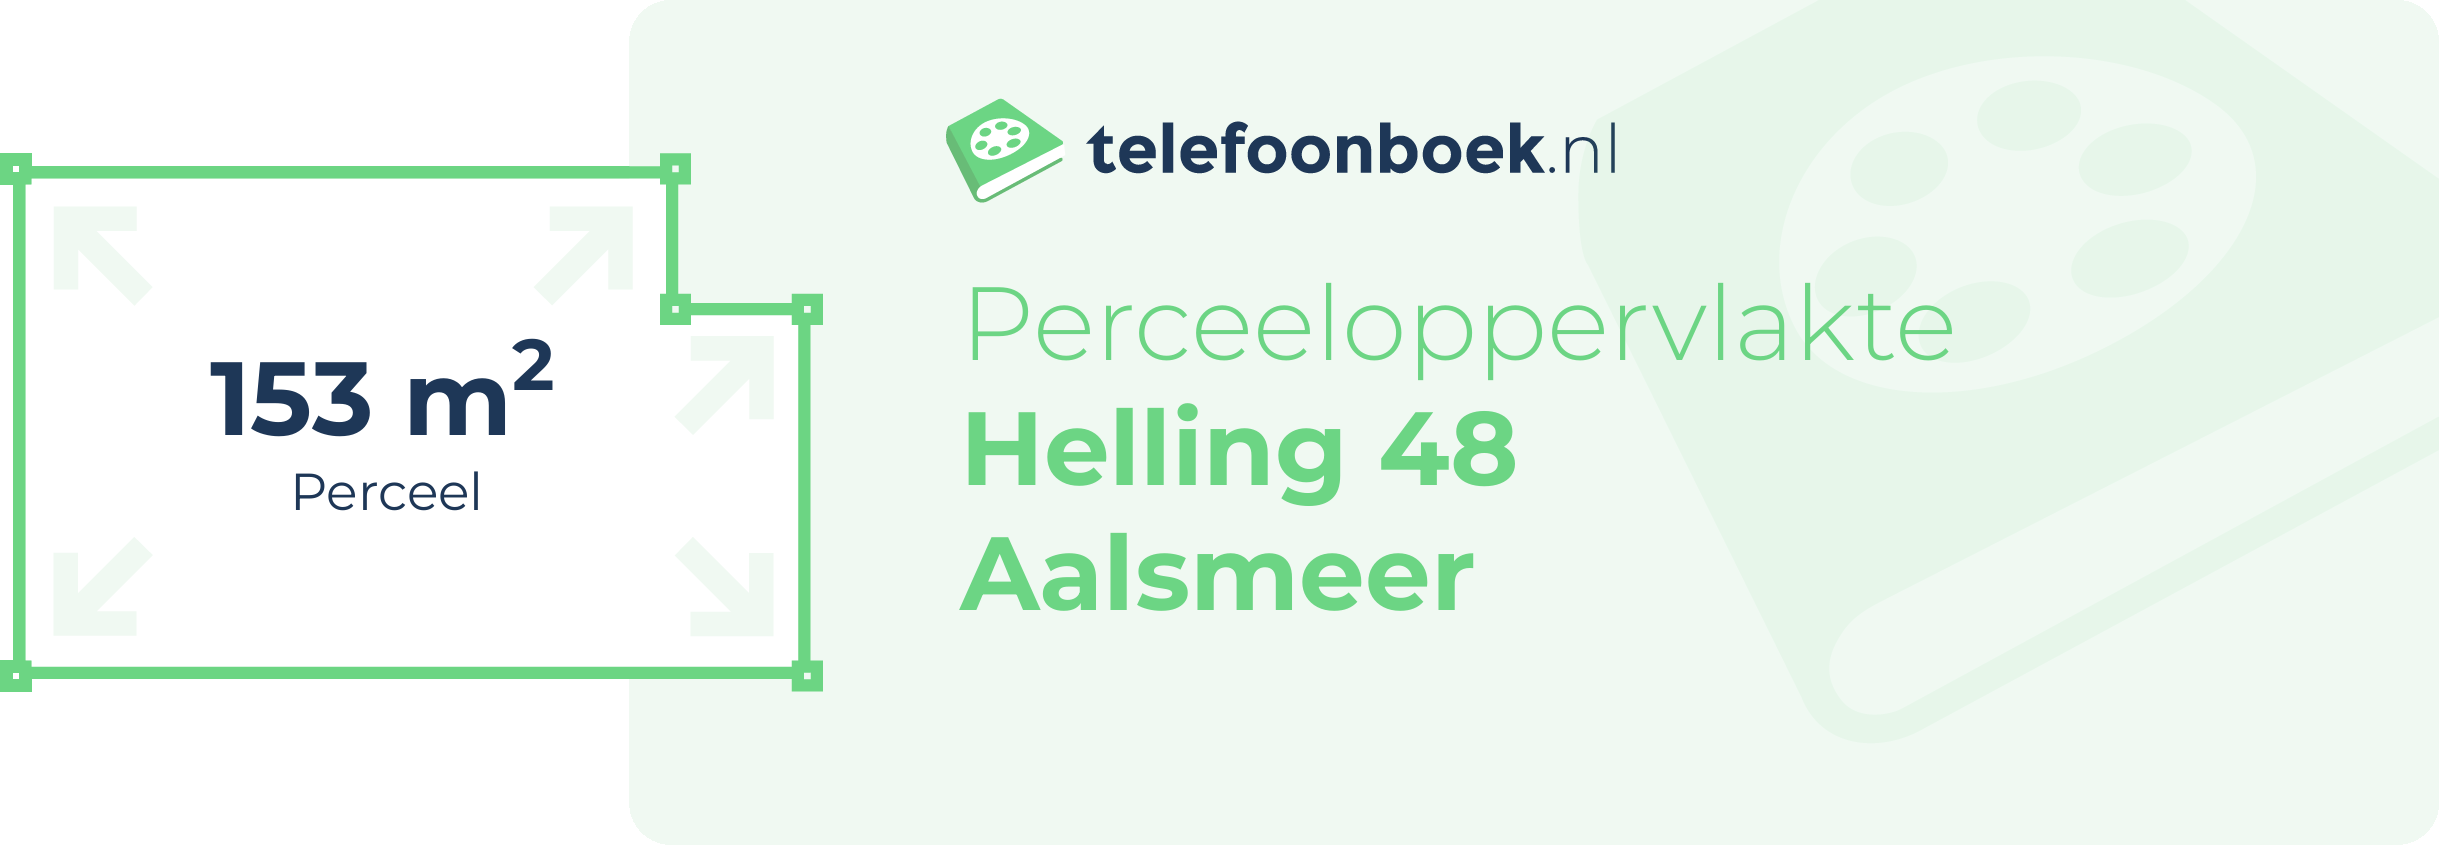 Perceeloppervlakte Helling 48 Aalsmeer